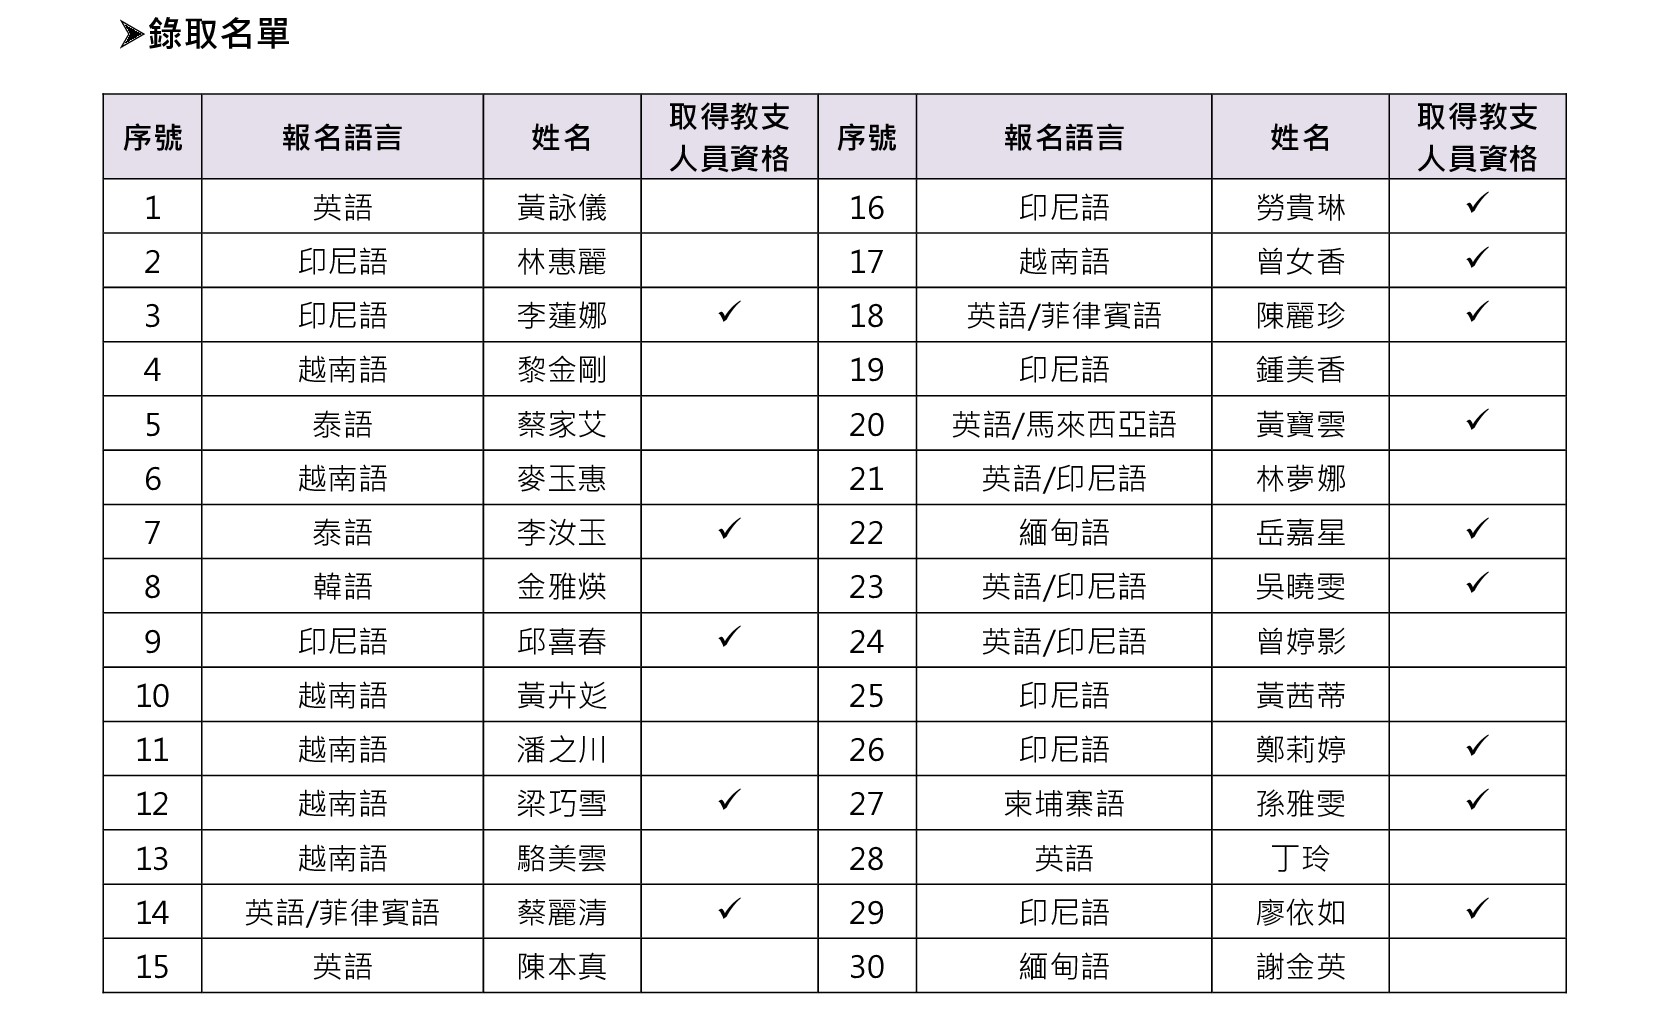 【公告】112年度臺北市新住民子女外語通譯專業訓練課程錄取名單